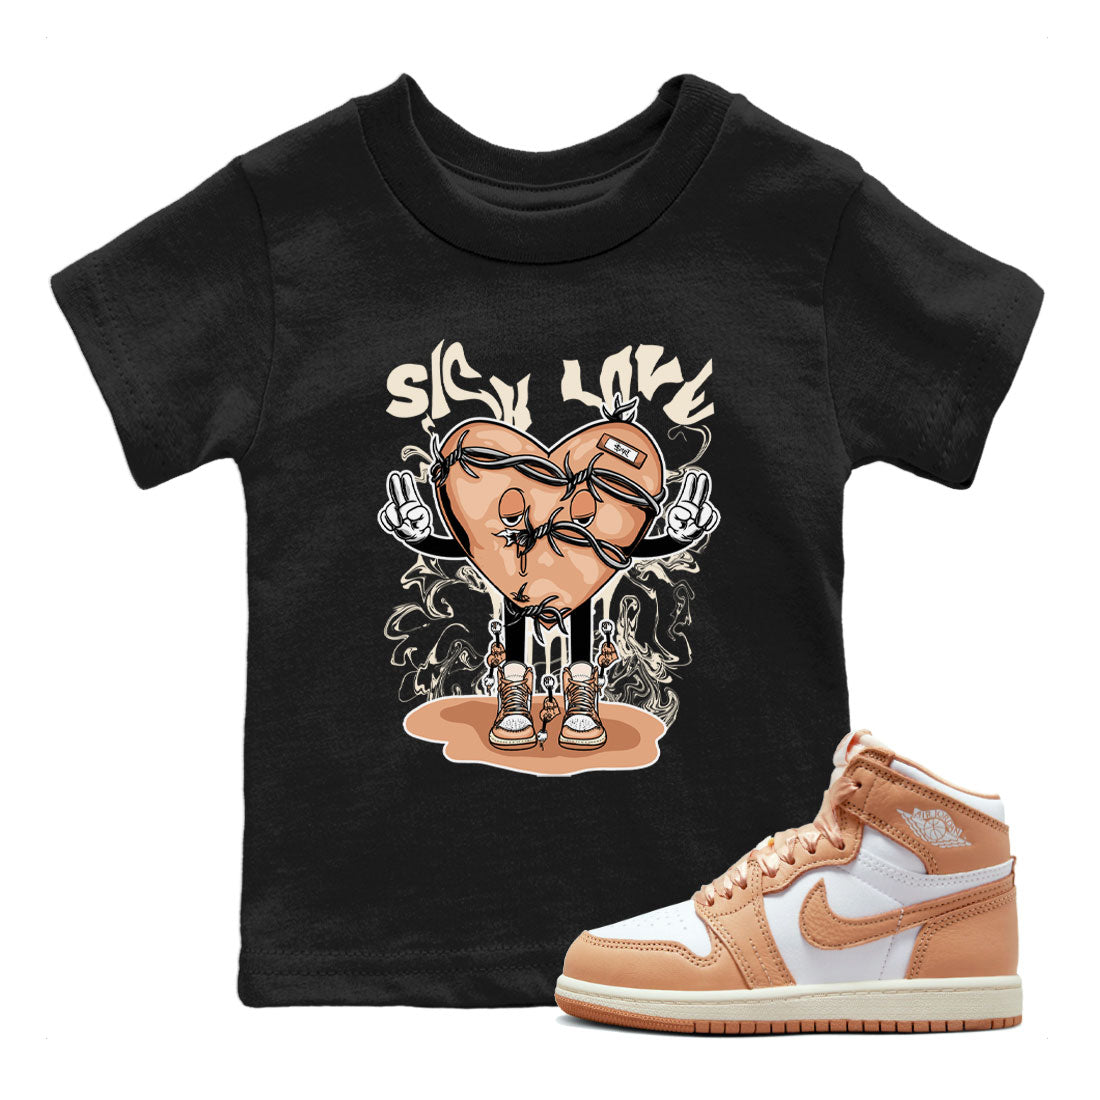 Air Jordan 1 High OG WMNS Praline shirt to match jordans Sick Love Streetwear Sneaker Shirt Air Jordan 1 Praline Drip Gear Zone Sneaker Matching Clothing Baby Toddler Black 1 T-Shirt